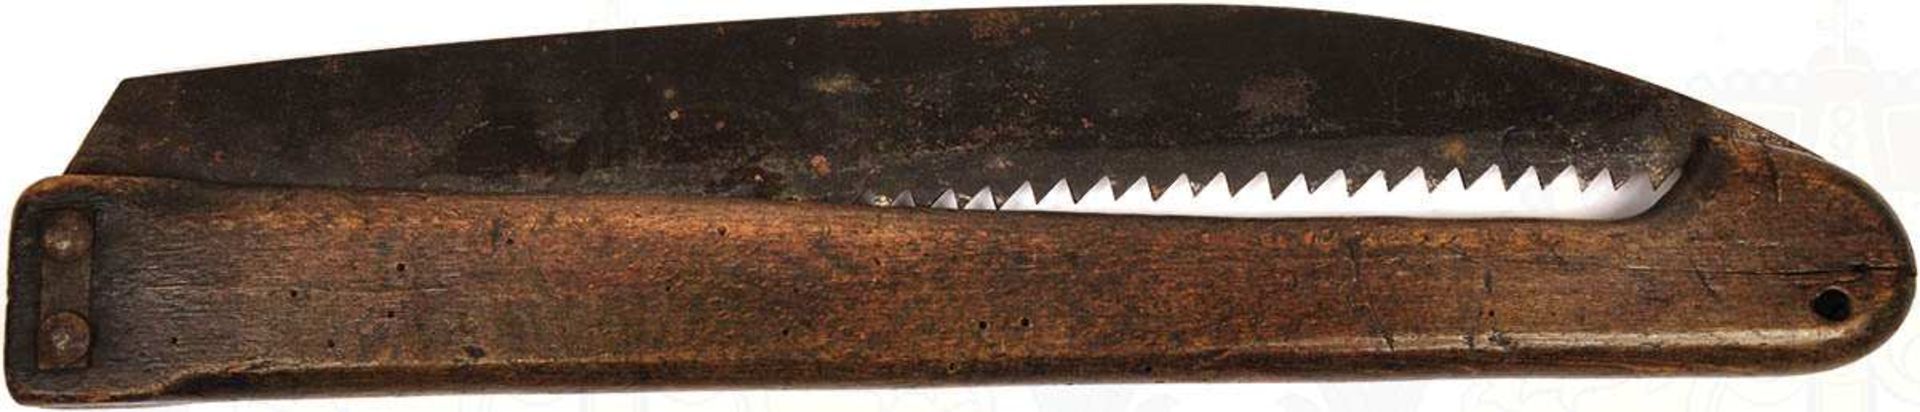 BAUMSÄGE, einklappbares Blatt, (i. d. Holzschaft), ges. L. 81 cm, um 1900 < 1004589F, Zustand: II, - Bild 2 aus 2